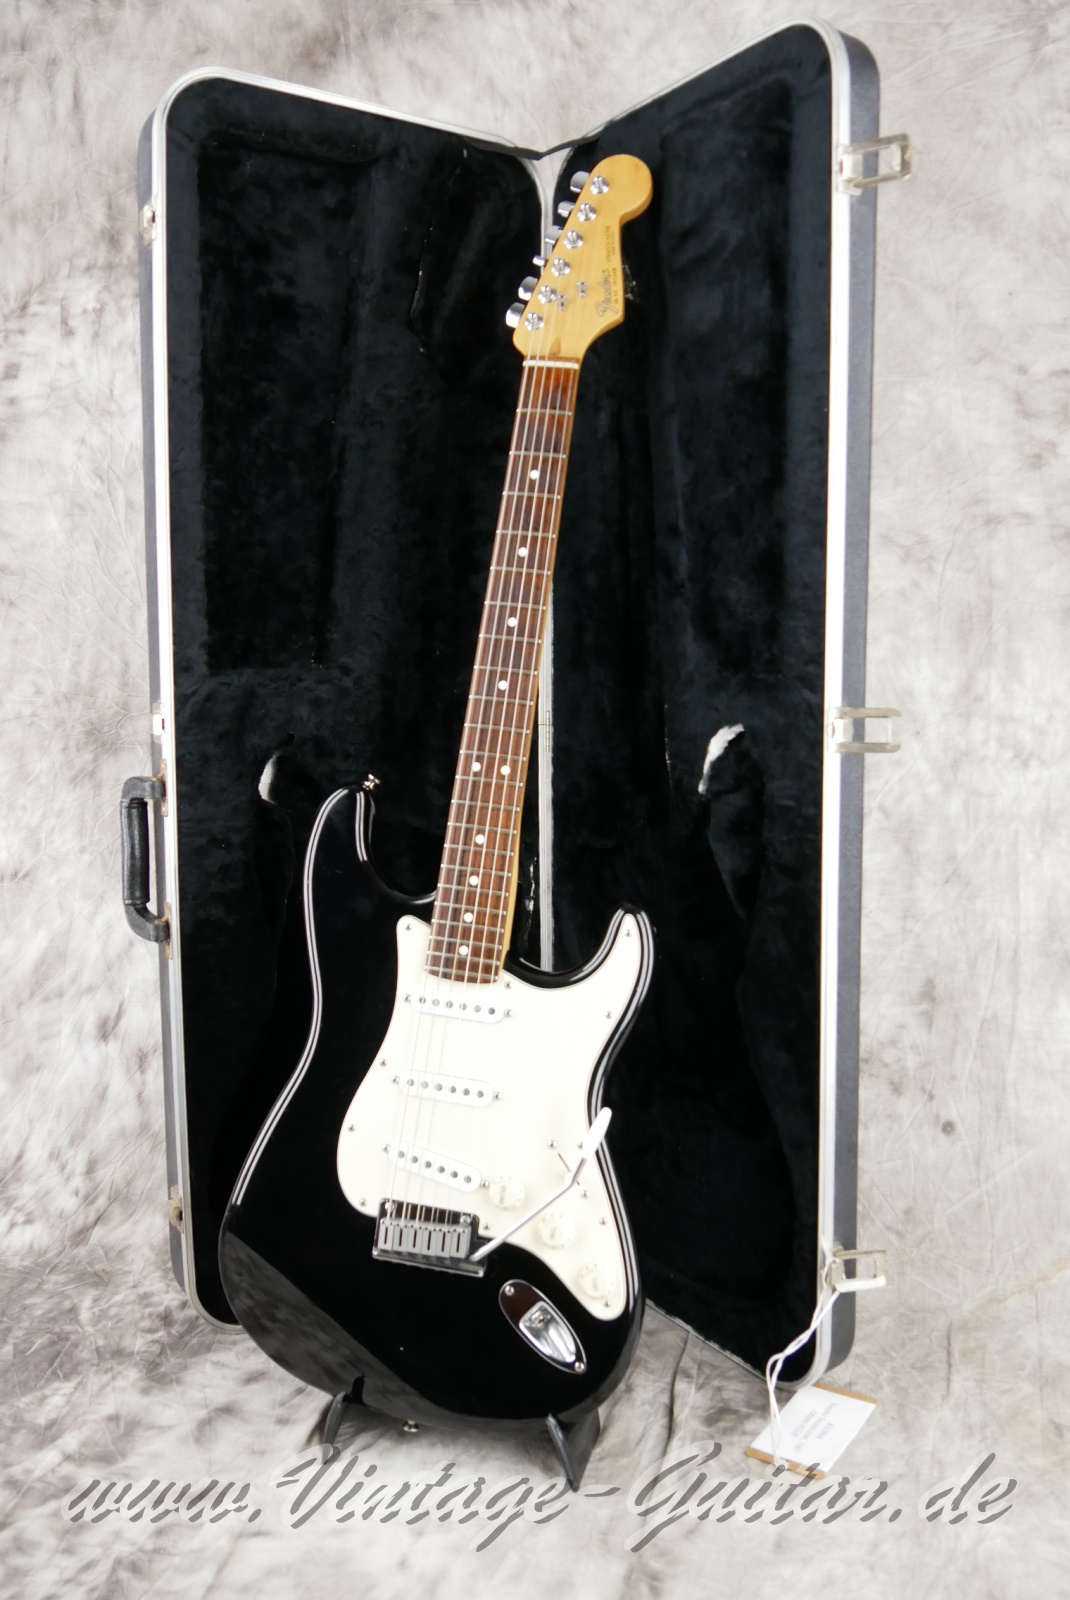 Fender-Stratocaster-American-Standard-1987-black-020.JPG